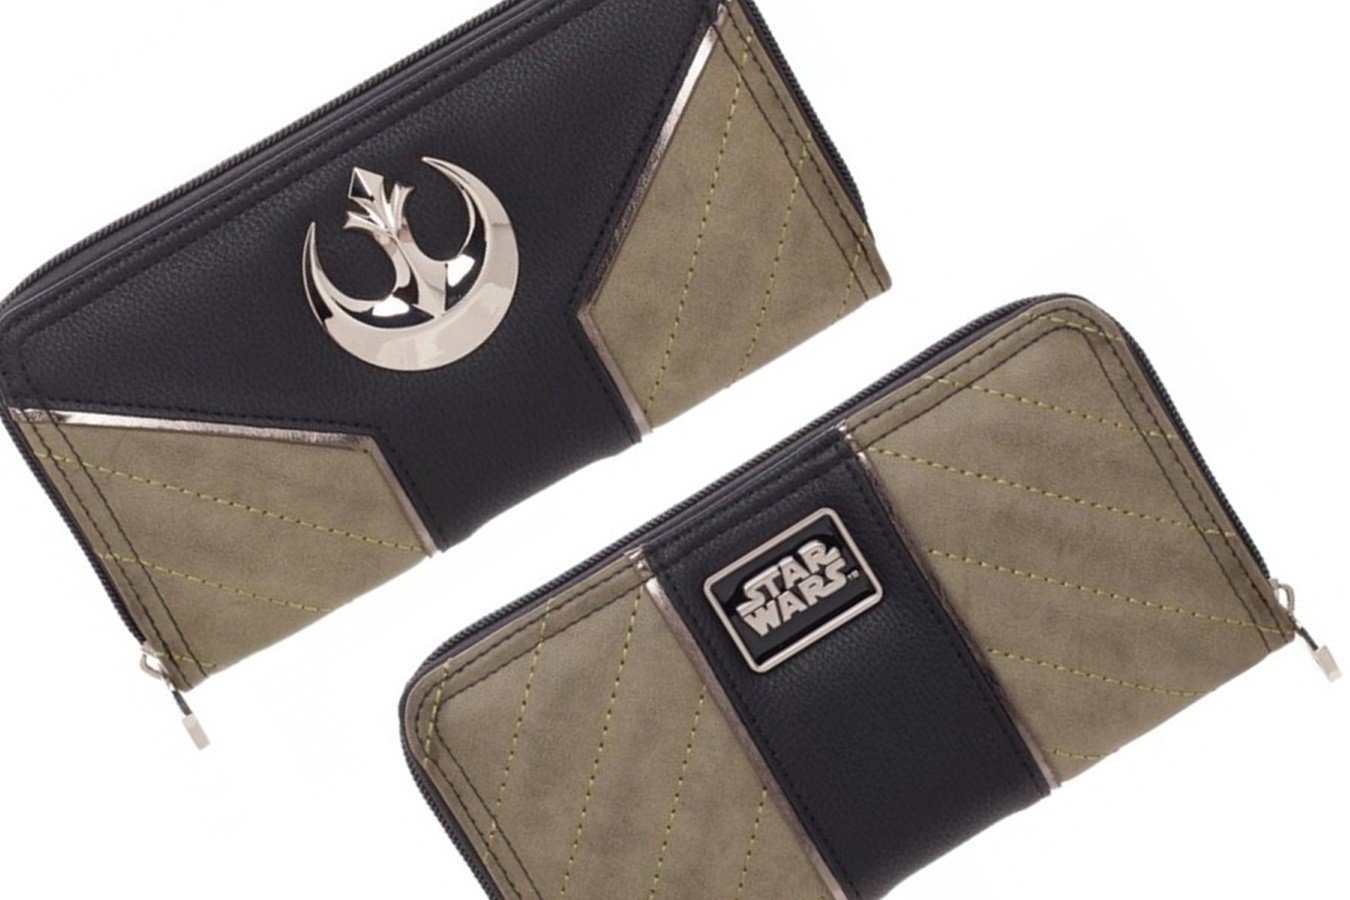 Bioworld x Star Wars Rogue One Jyn Erso zip around wallet